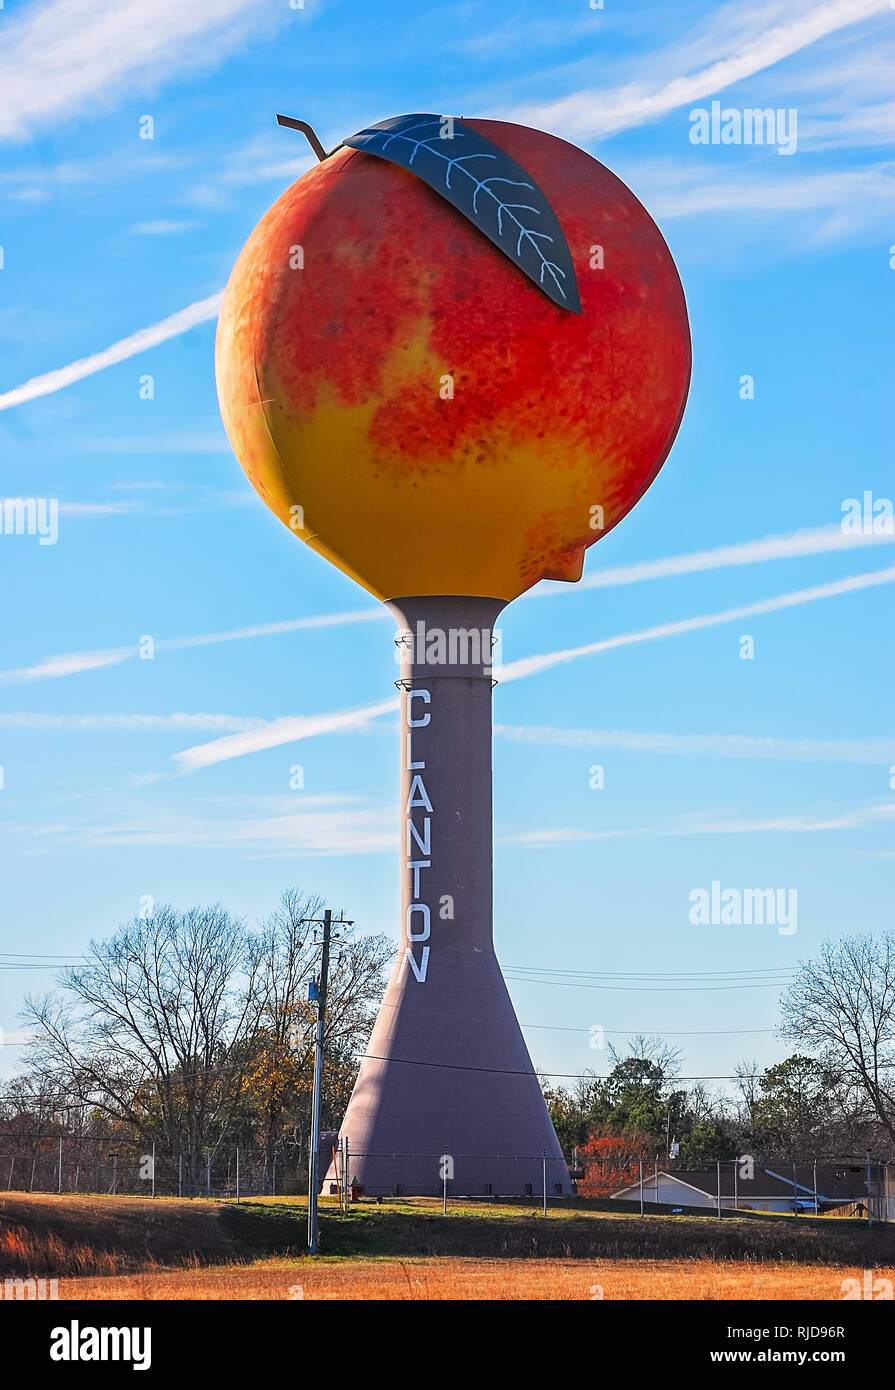 Der Pfirsich-förmige Wasserturm abgebildet ist, Jan. 3, 2011, in Clanton, Alabama. Clanton, in Chilton County gelegen, ist für seine Pfirsiche bekannt. Stockfoto